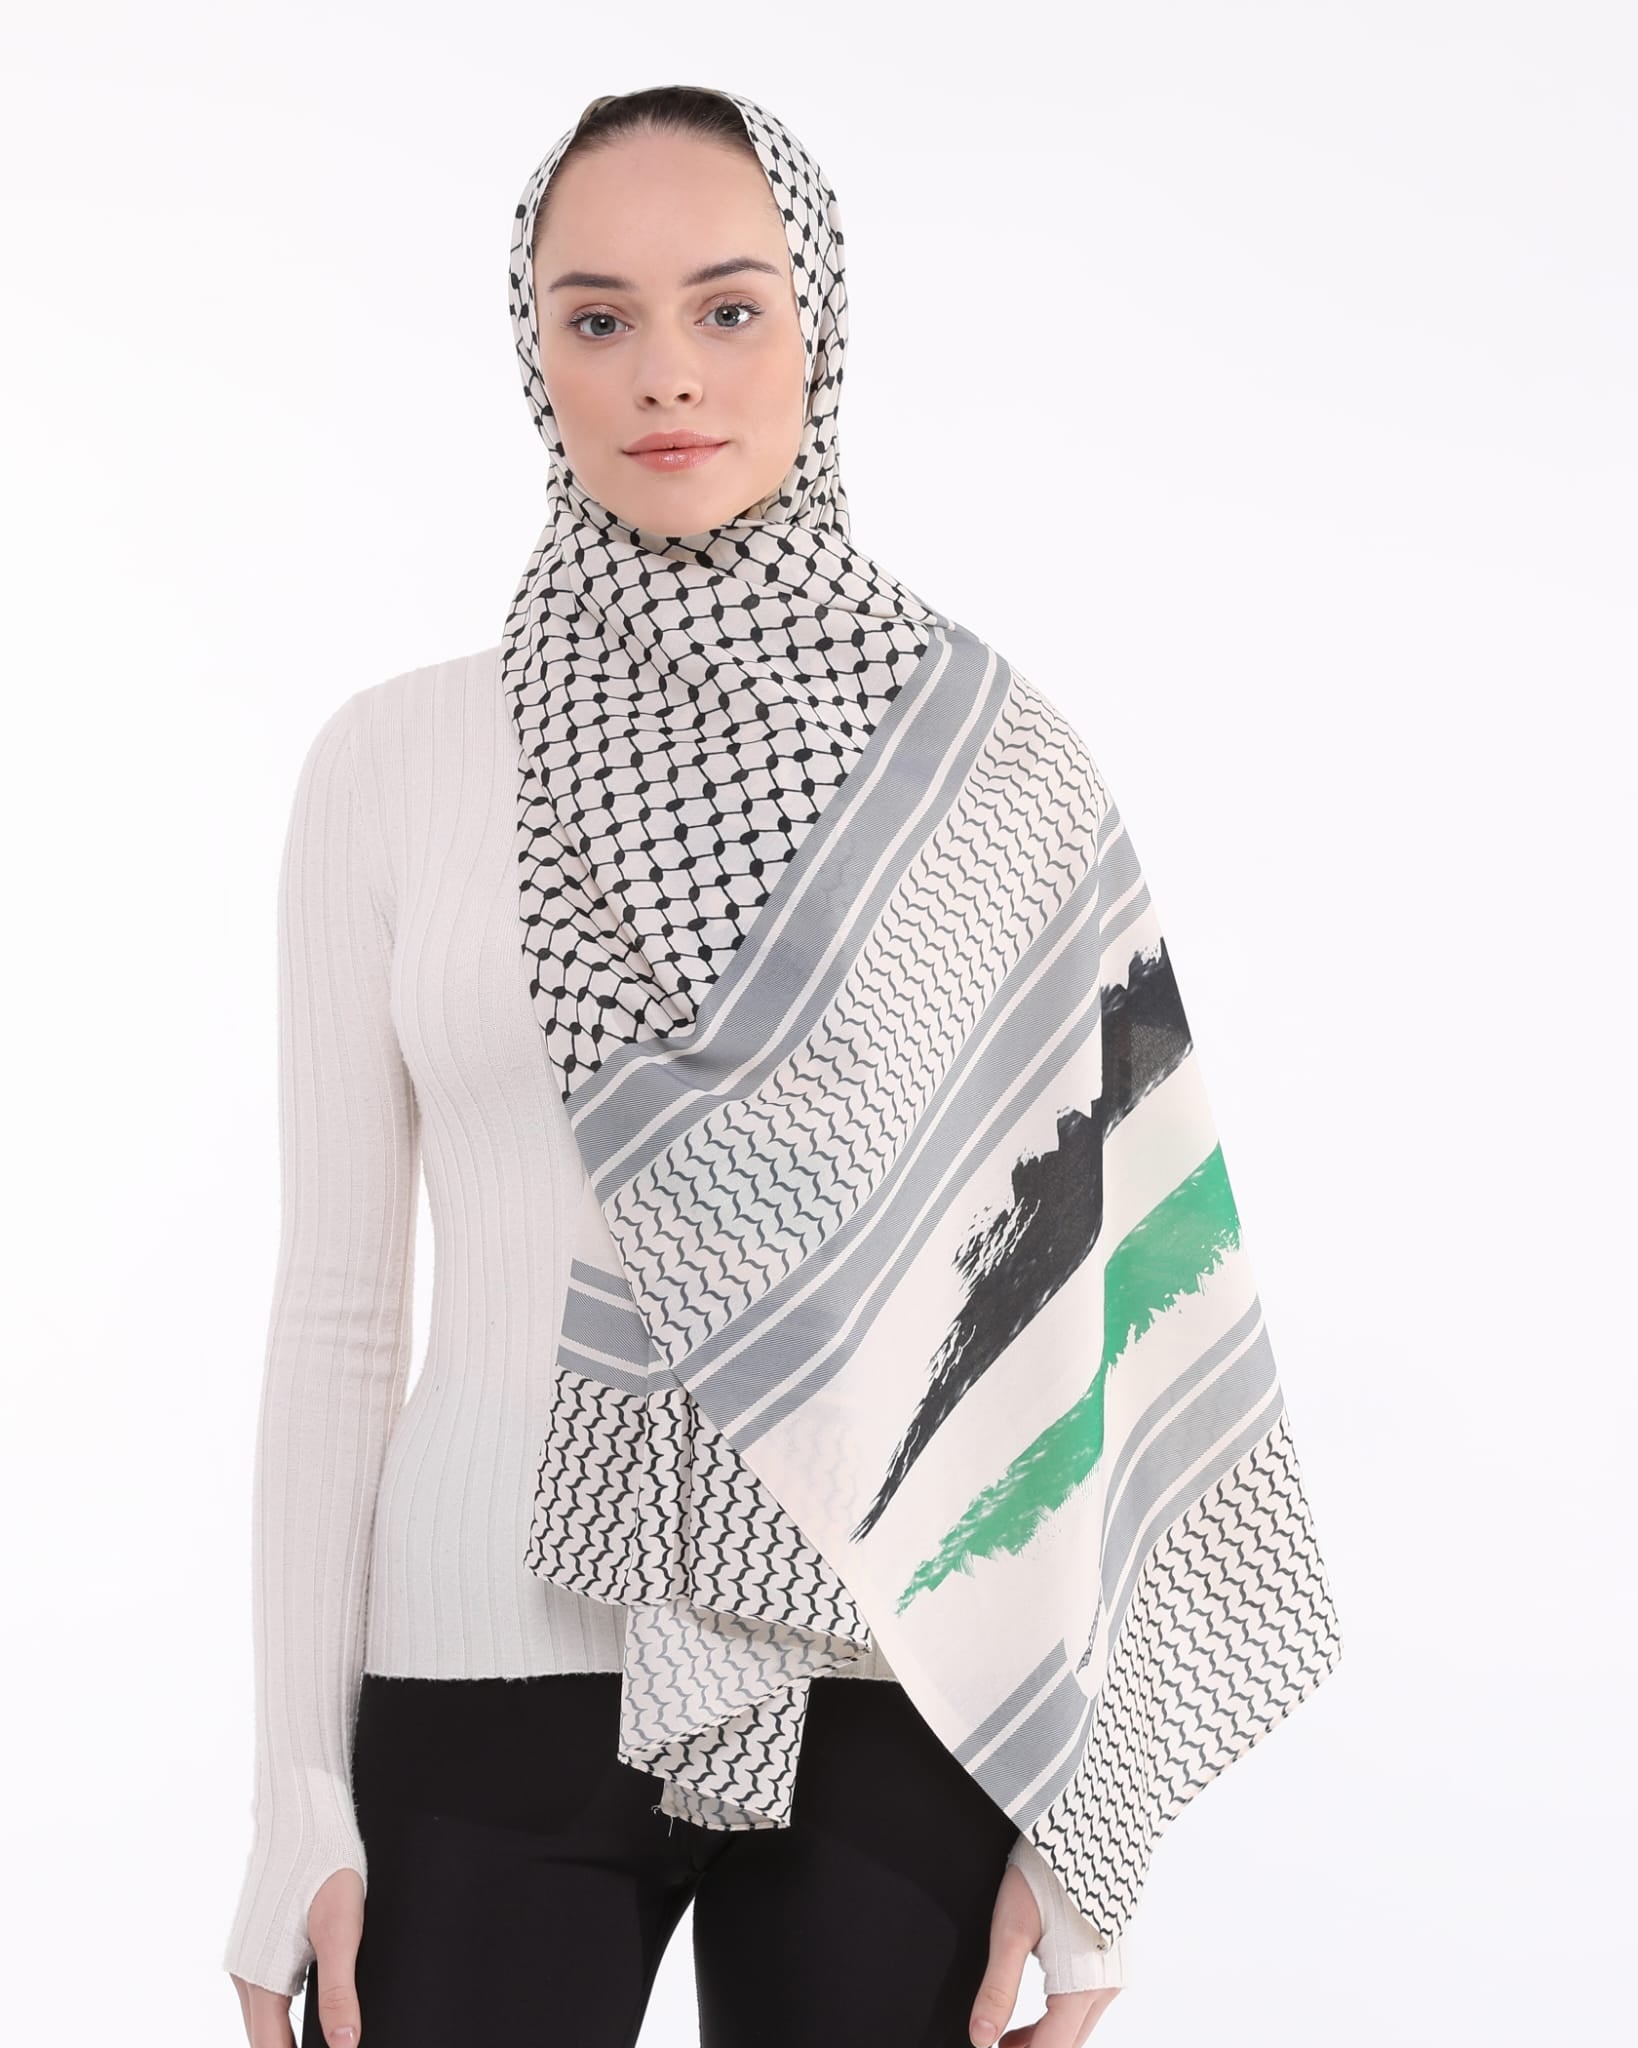 Beige Palestinian flag Keffiyeh hijab-scarf cotton flex fabric #526